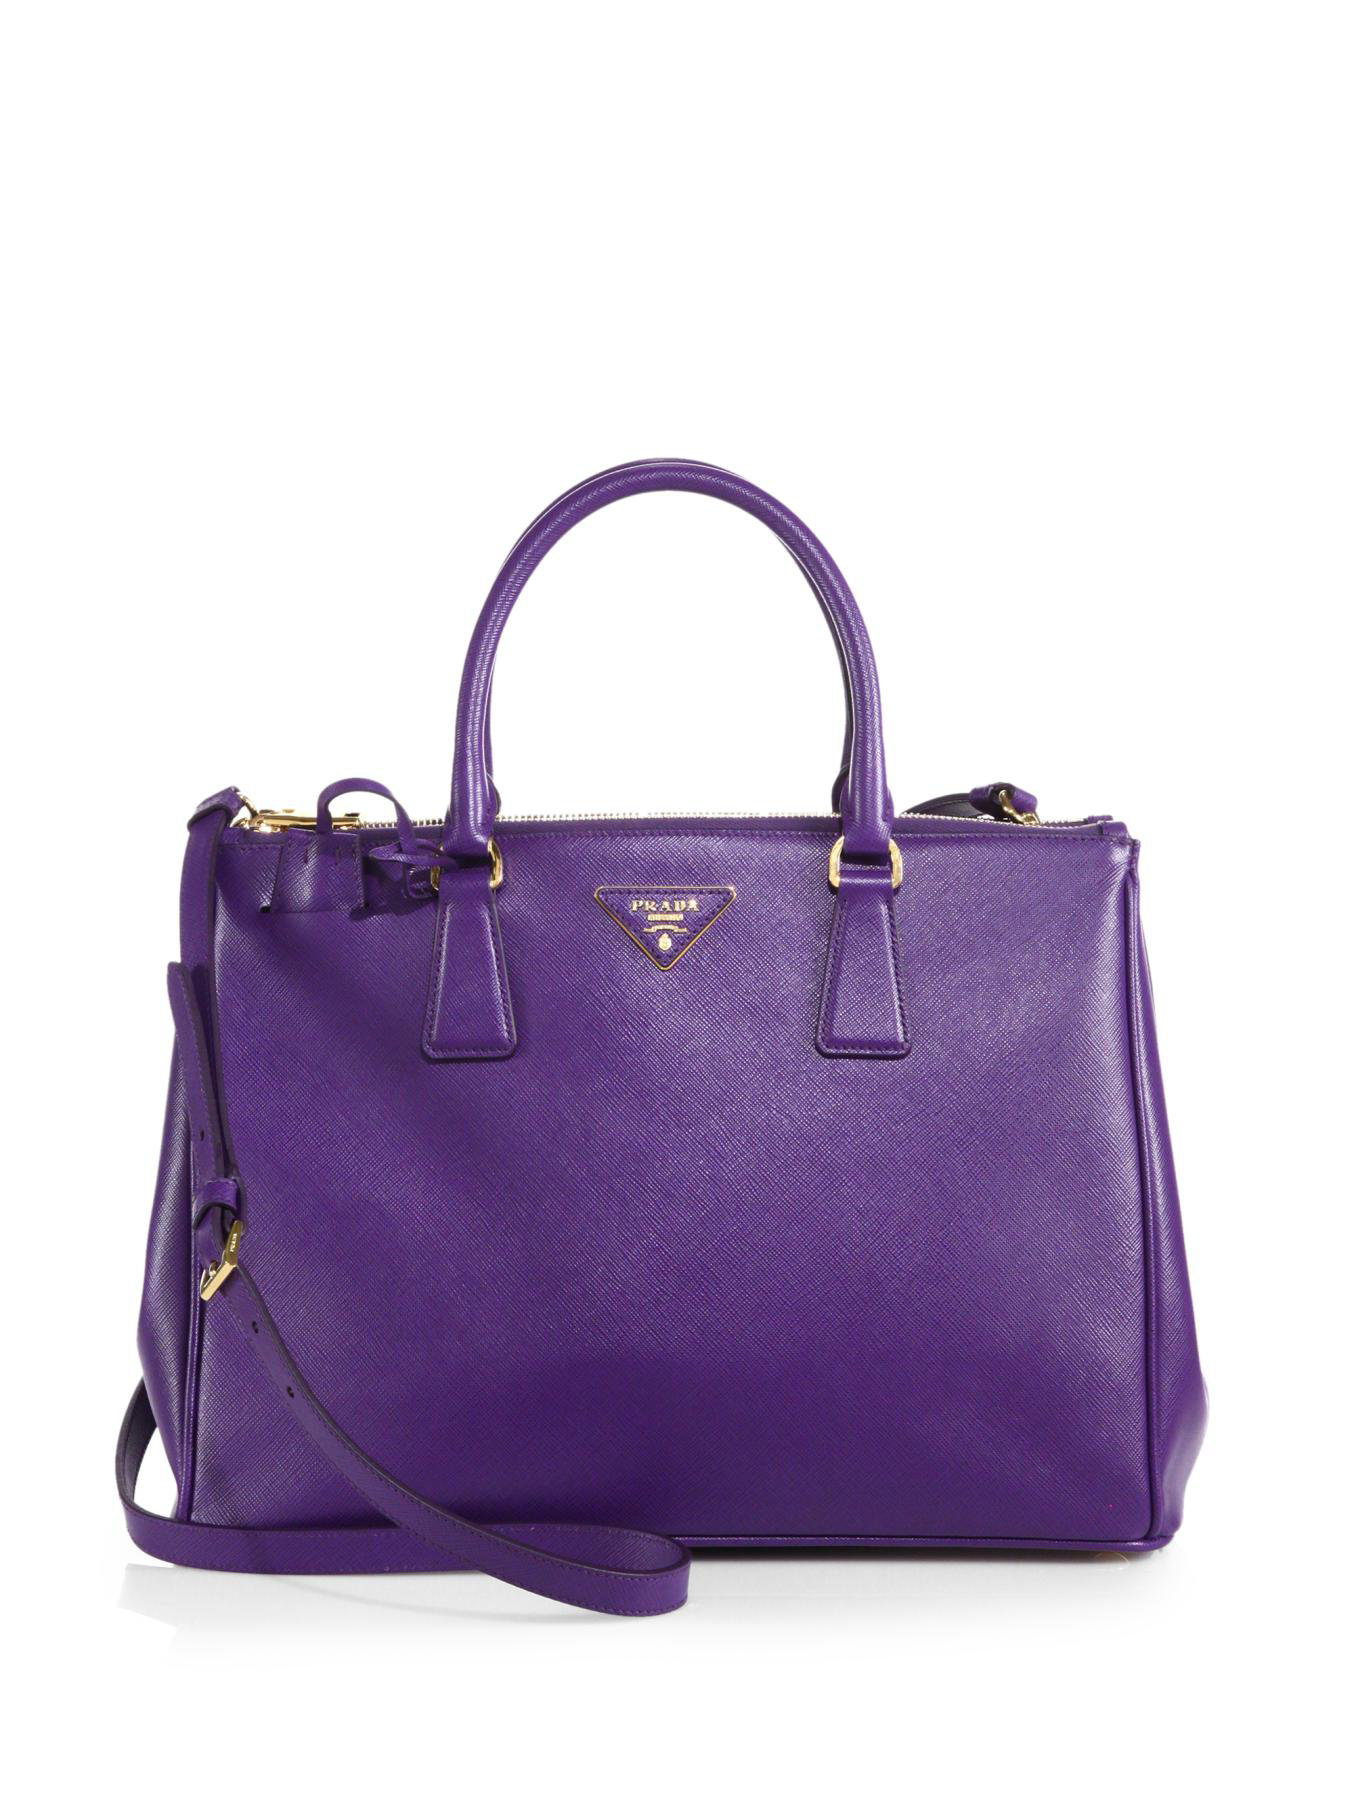 Prada Saffiano Medium Double Zip Top-handle Bag in Pink | Lyst